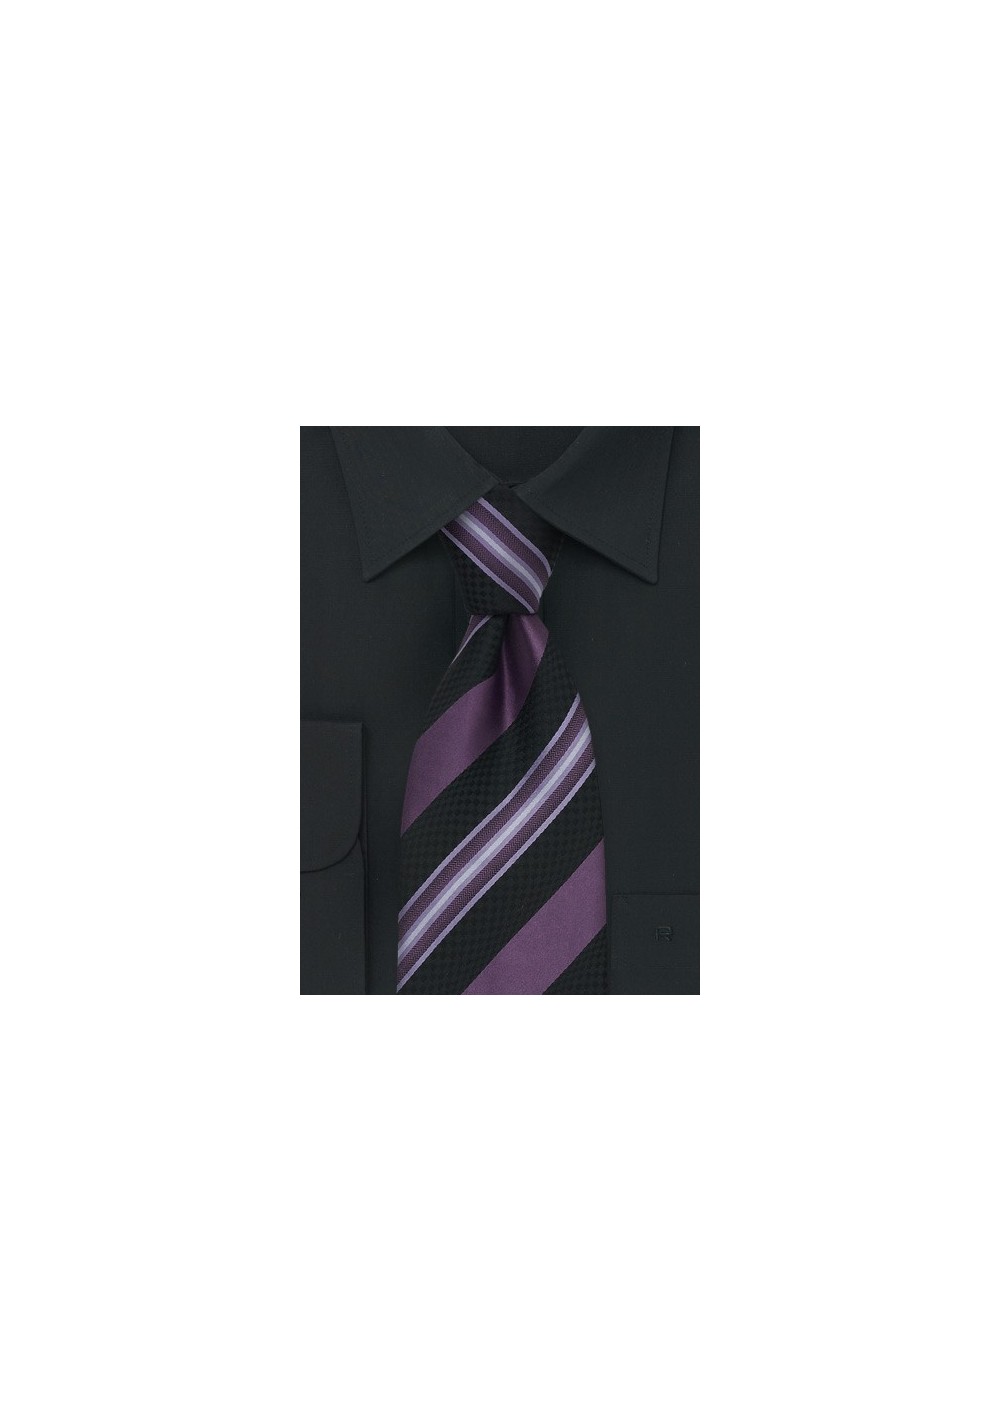 Striped Purple & Navy Silk Tie